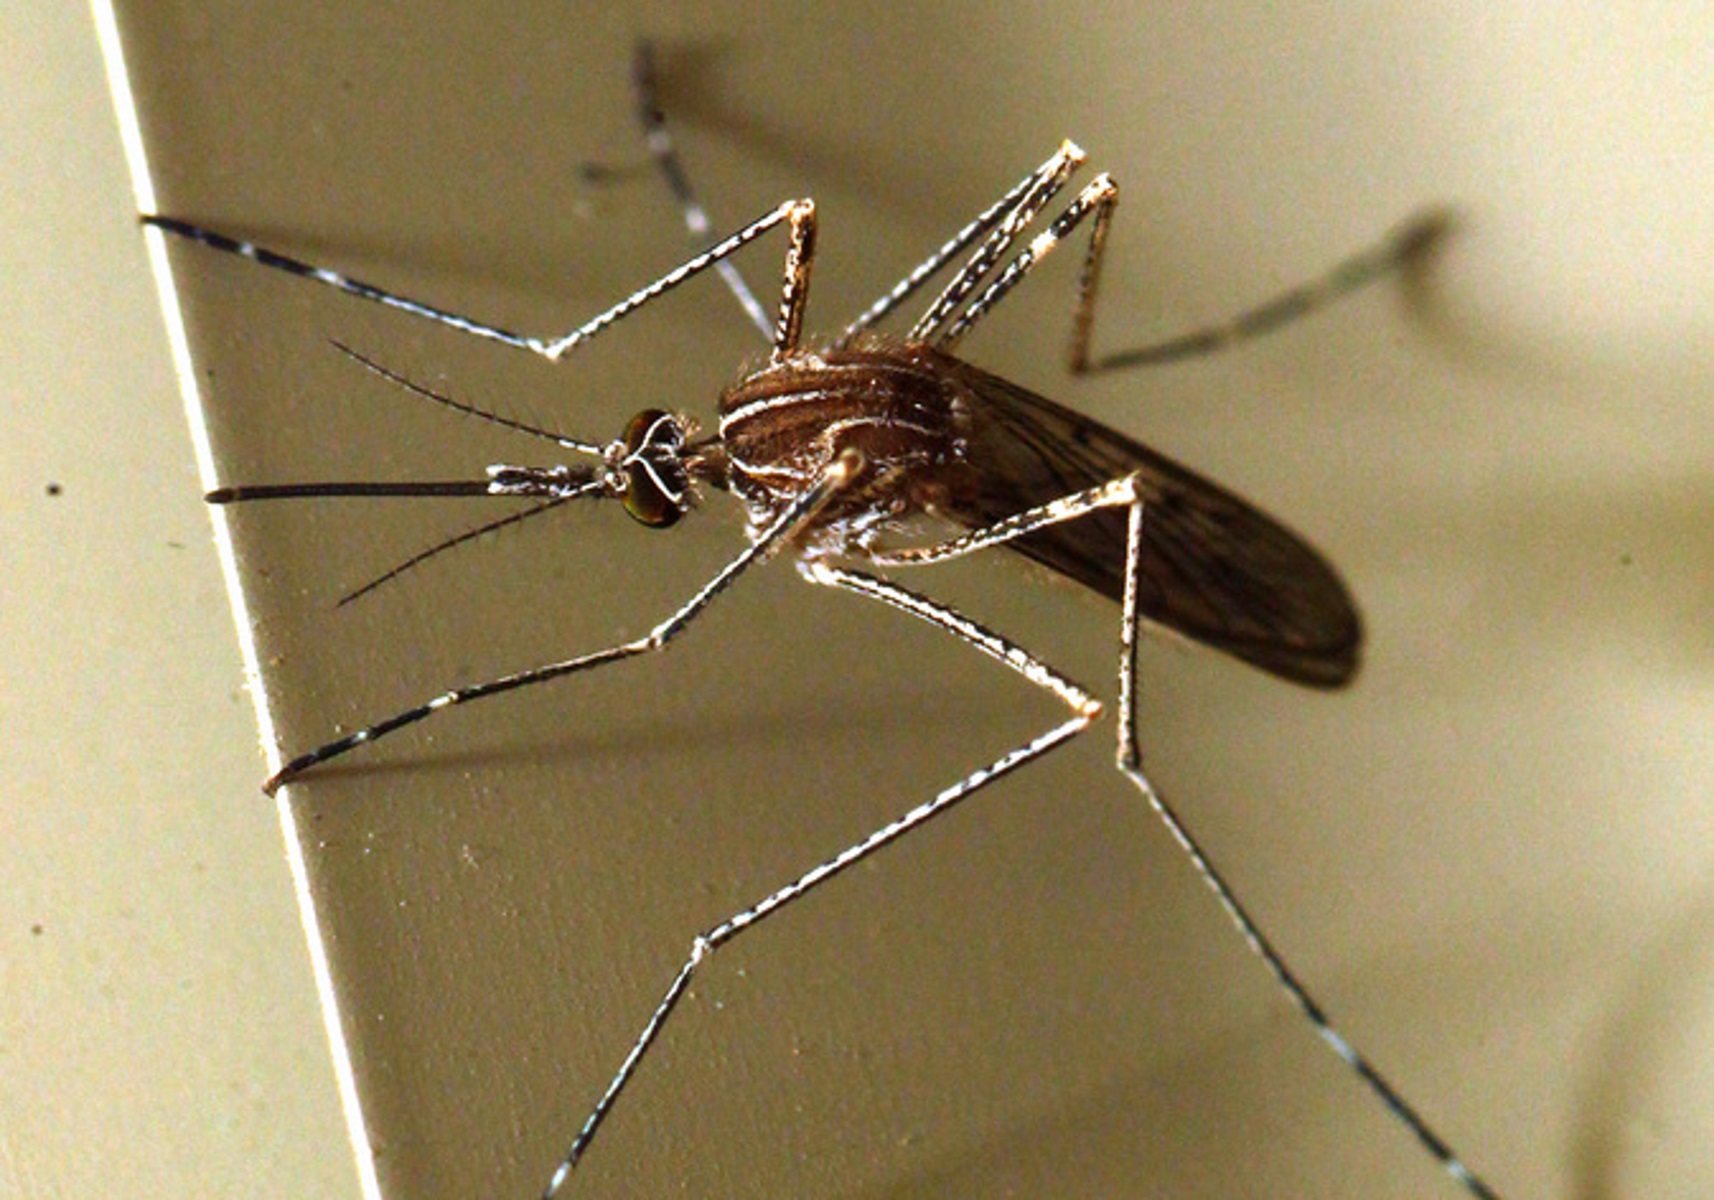 Ελληνική εφαρμογή διώχνει τα κουνούπια και είναι δωρεάν – Πώς λειτουργεί